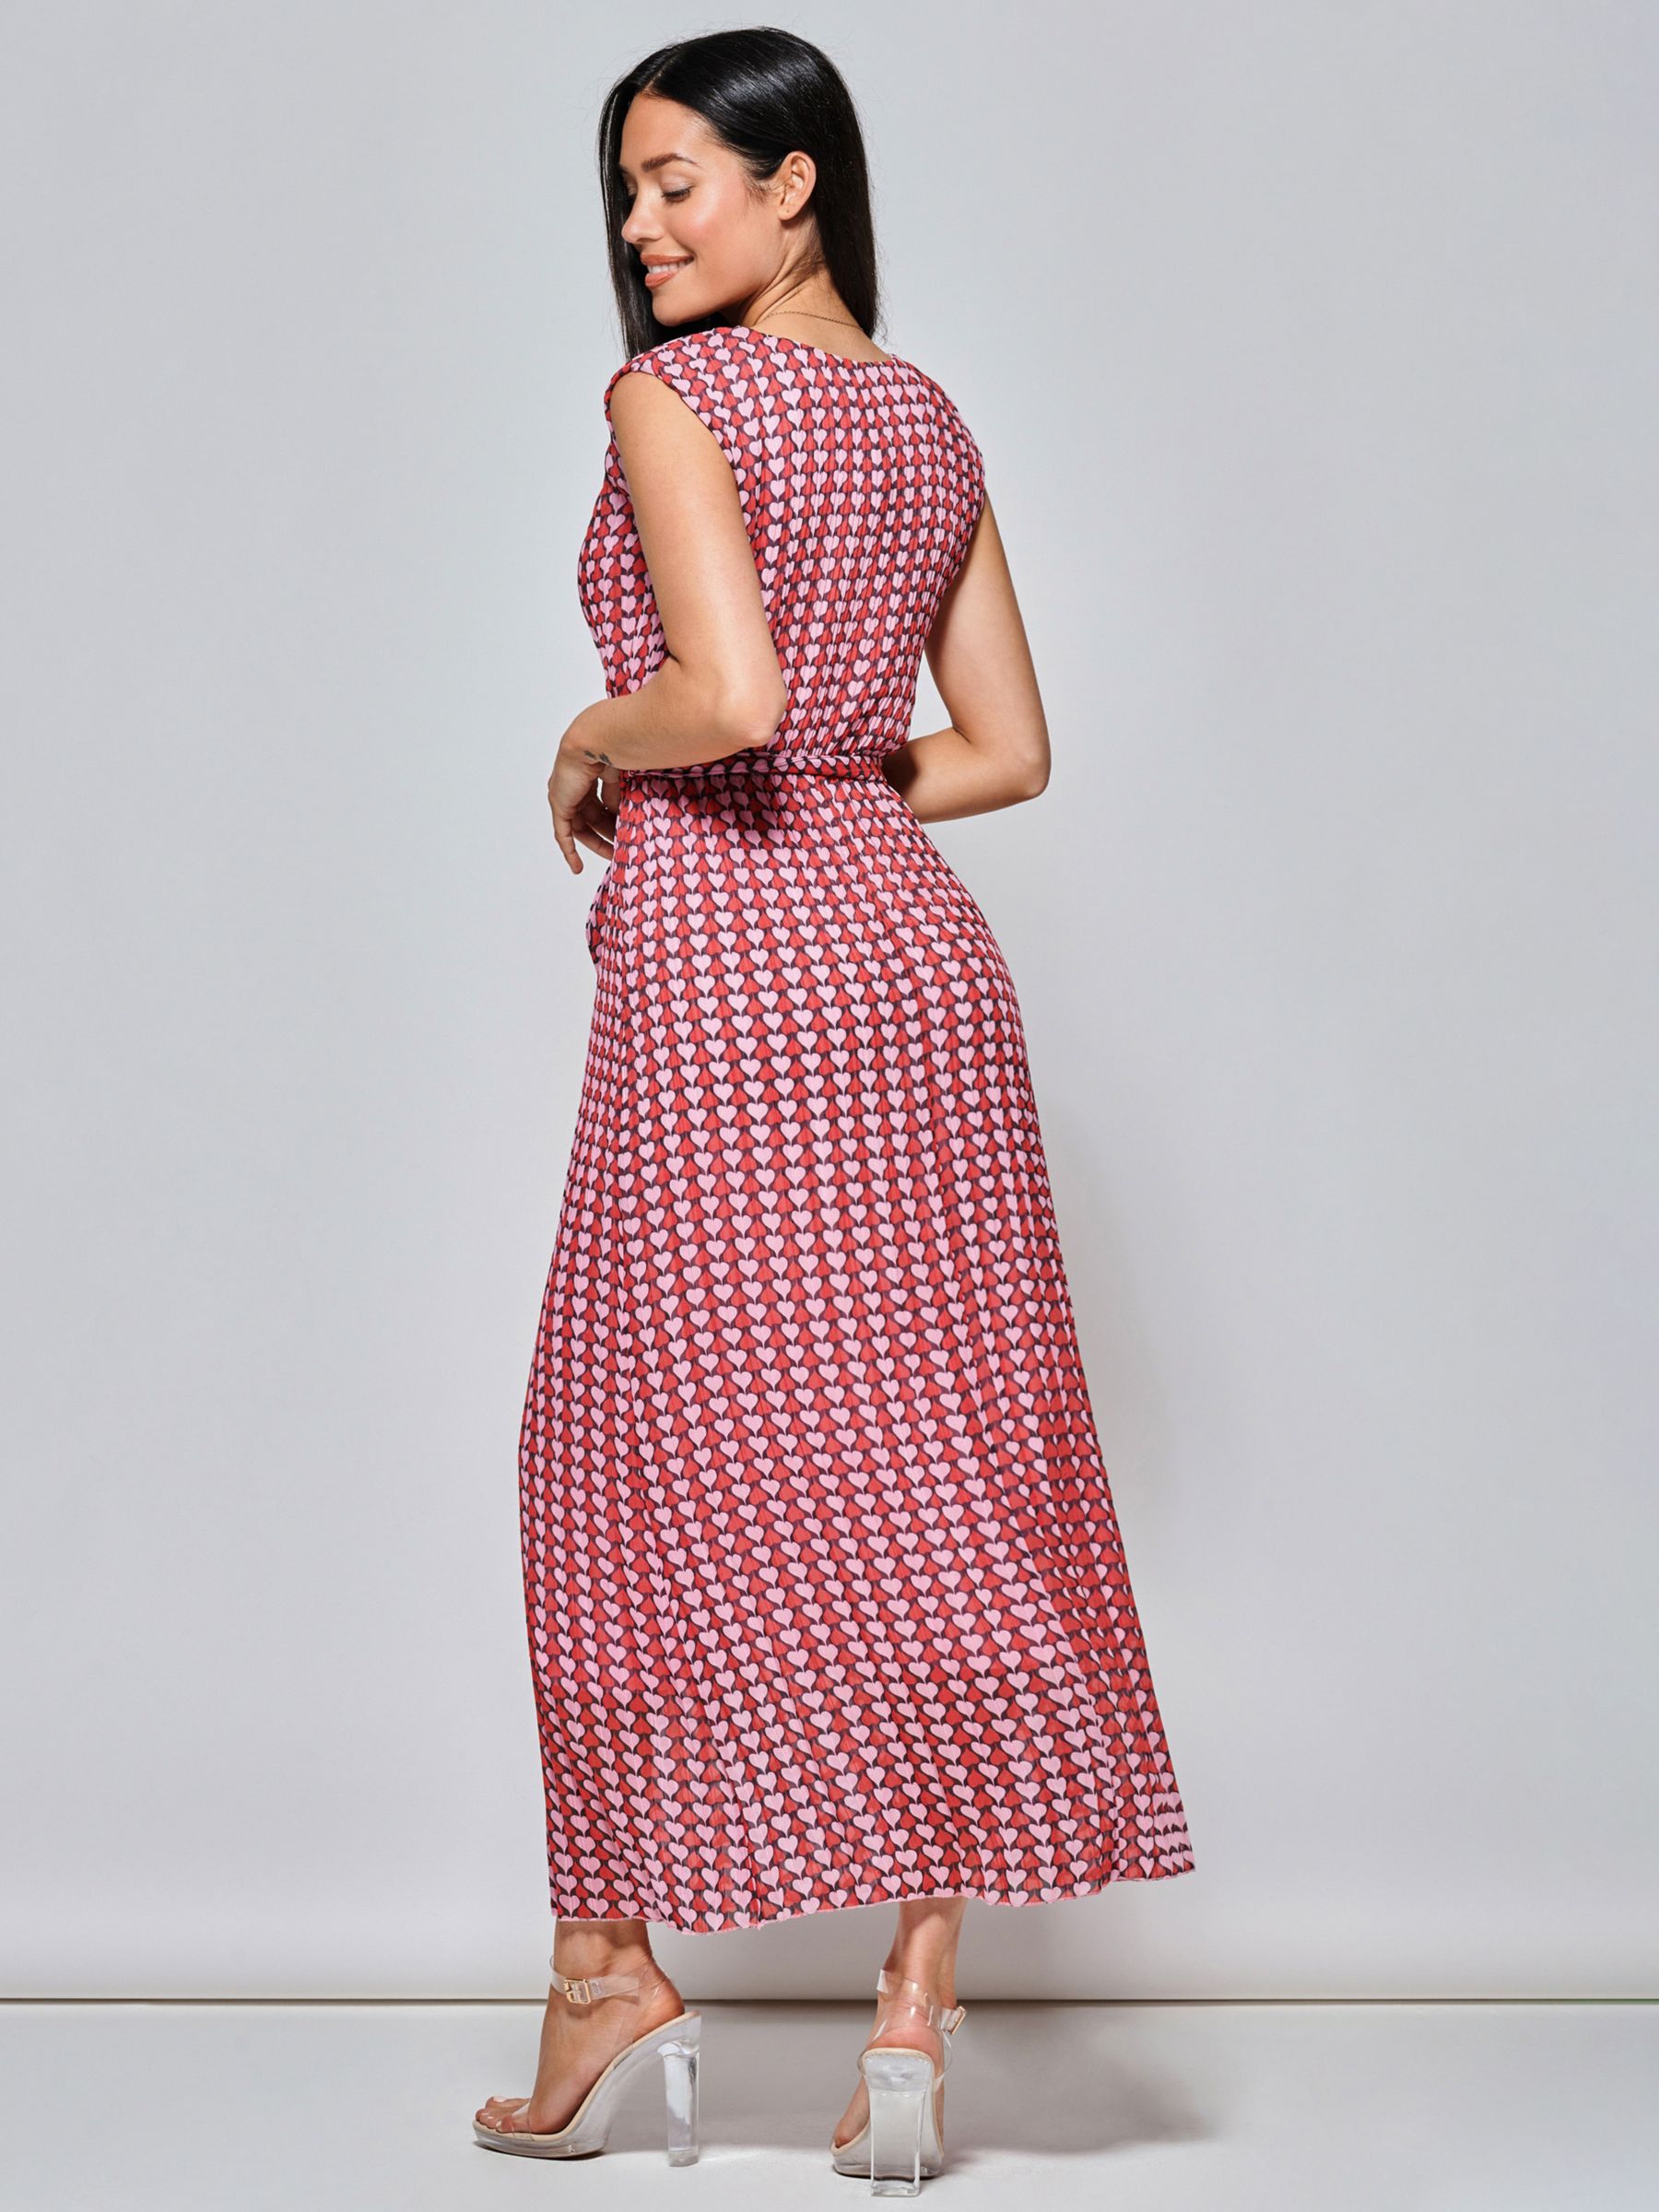 Jolie Moi Heart Print Tie Waist Maxi Dress, Pink/Multi, 8